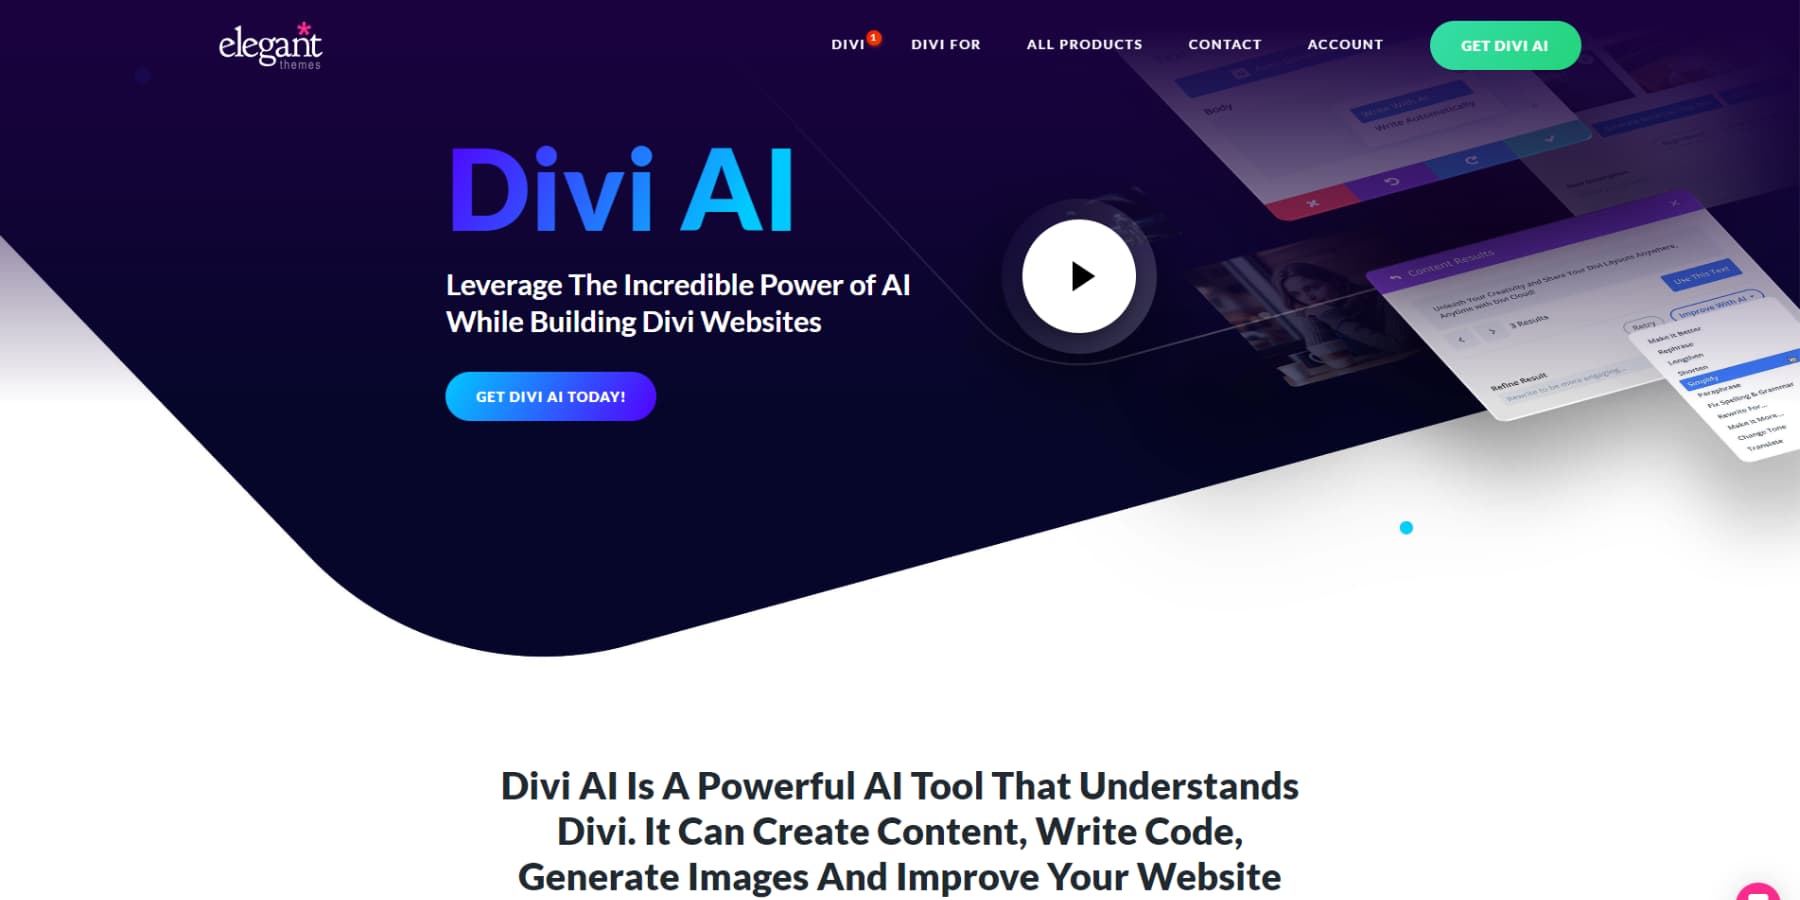 A screenshot of Divi AI's homepage